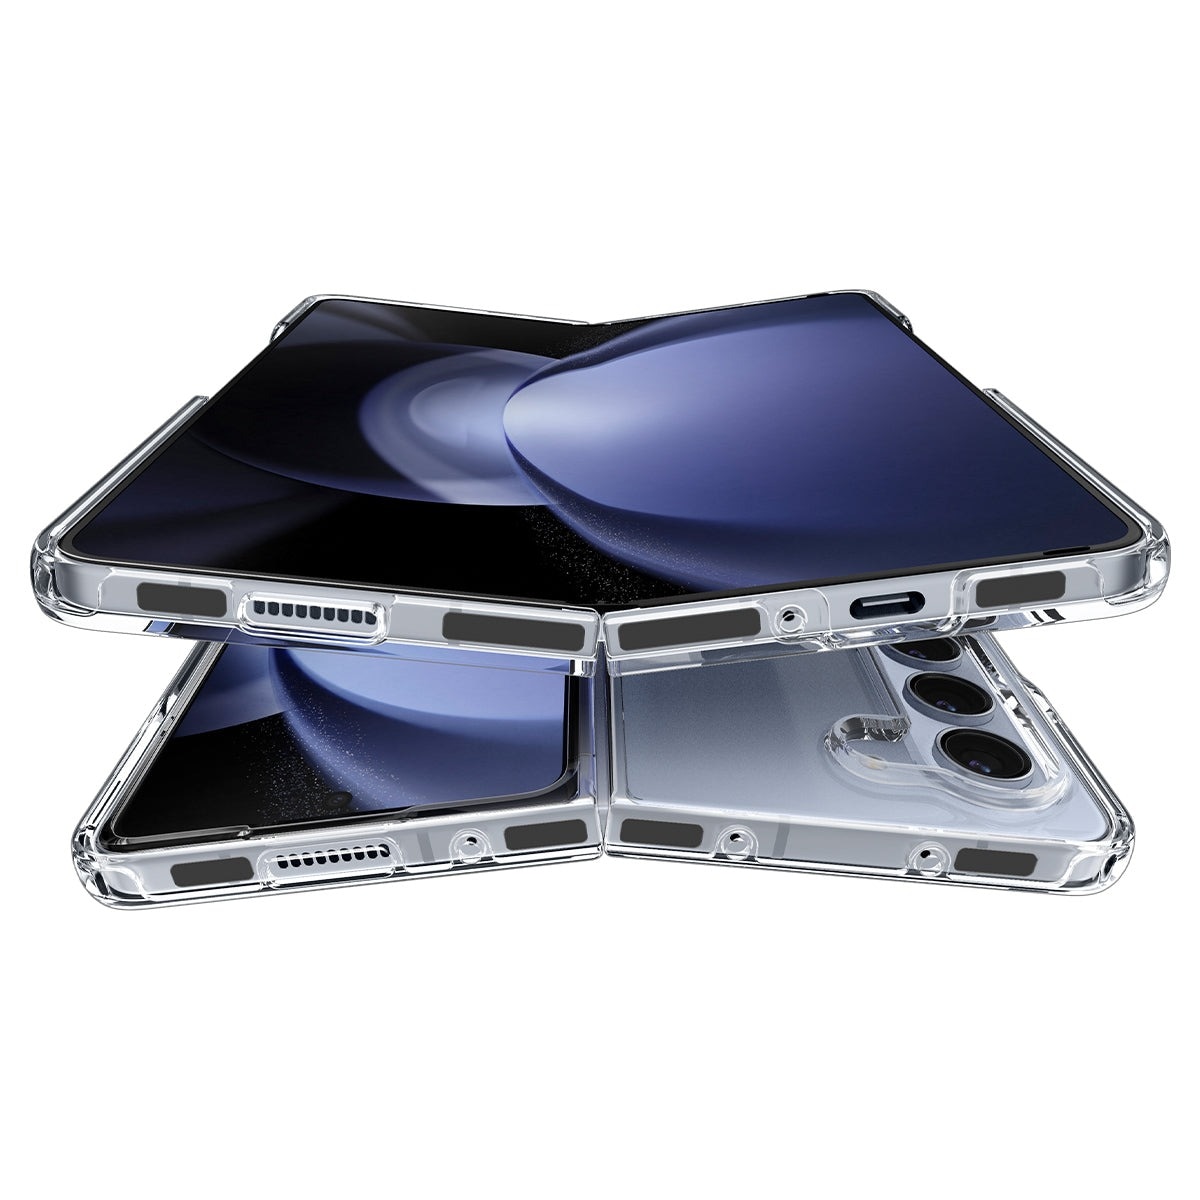 Cover Ultra Hybrid Samsung Galaxy Z Fold 5 Crystal Clear